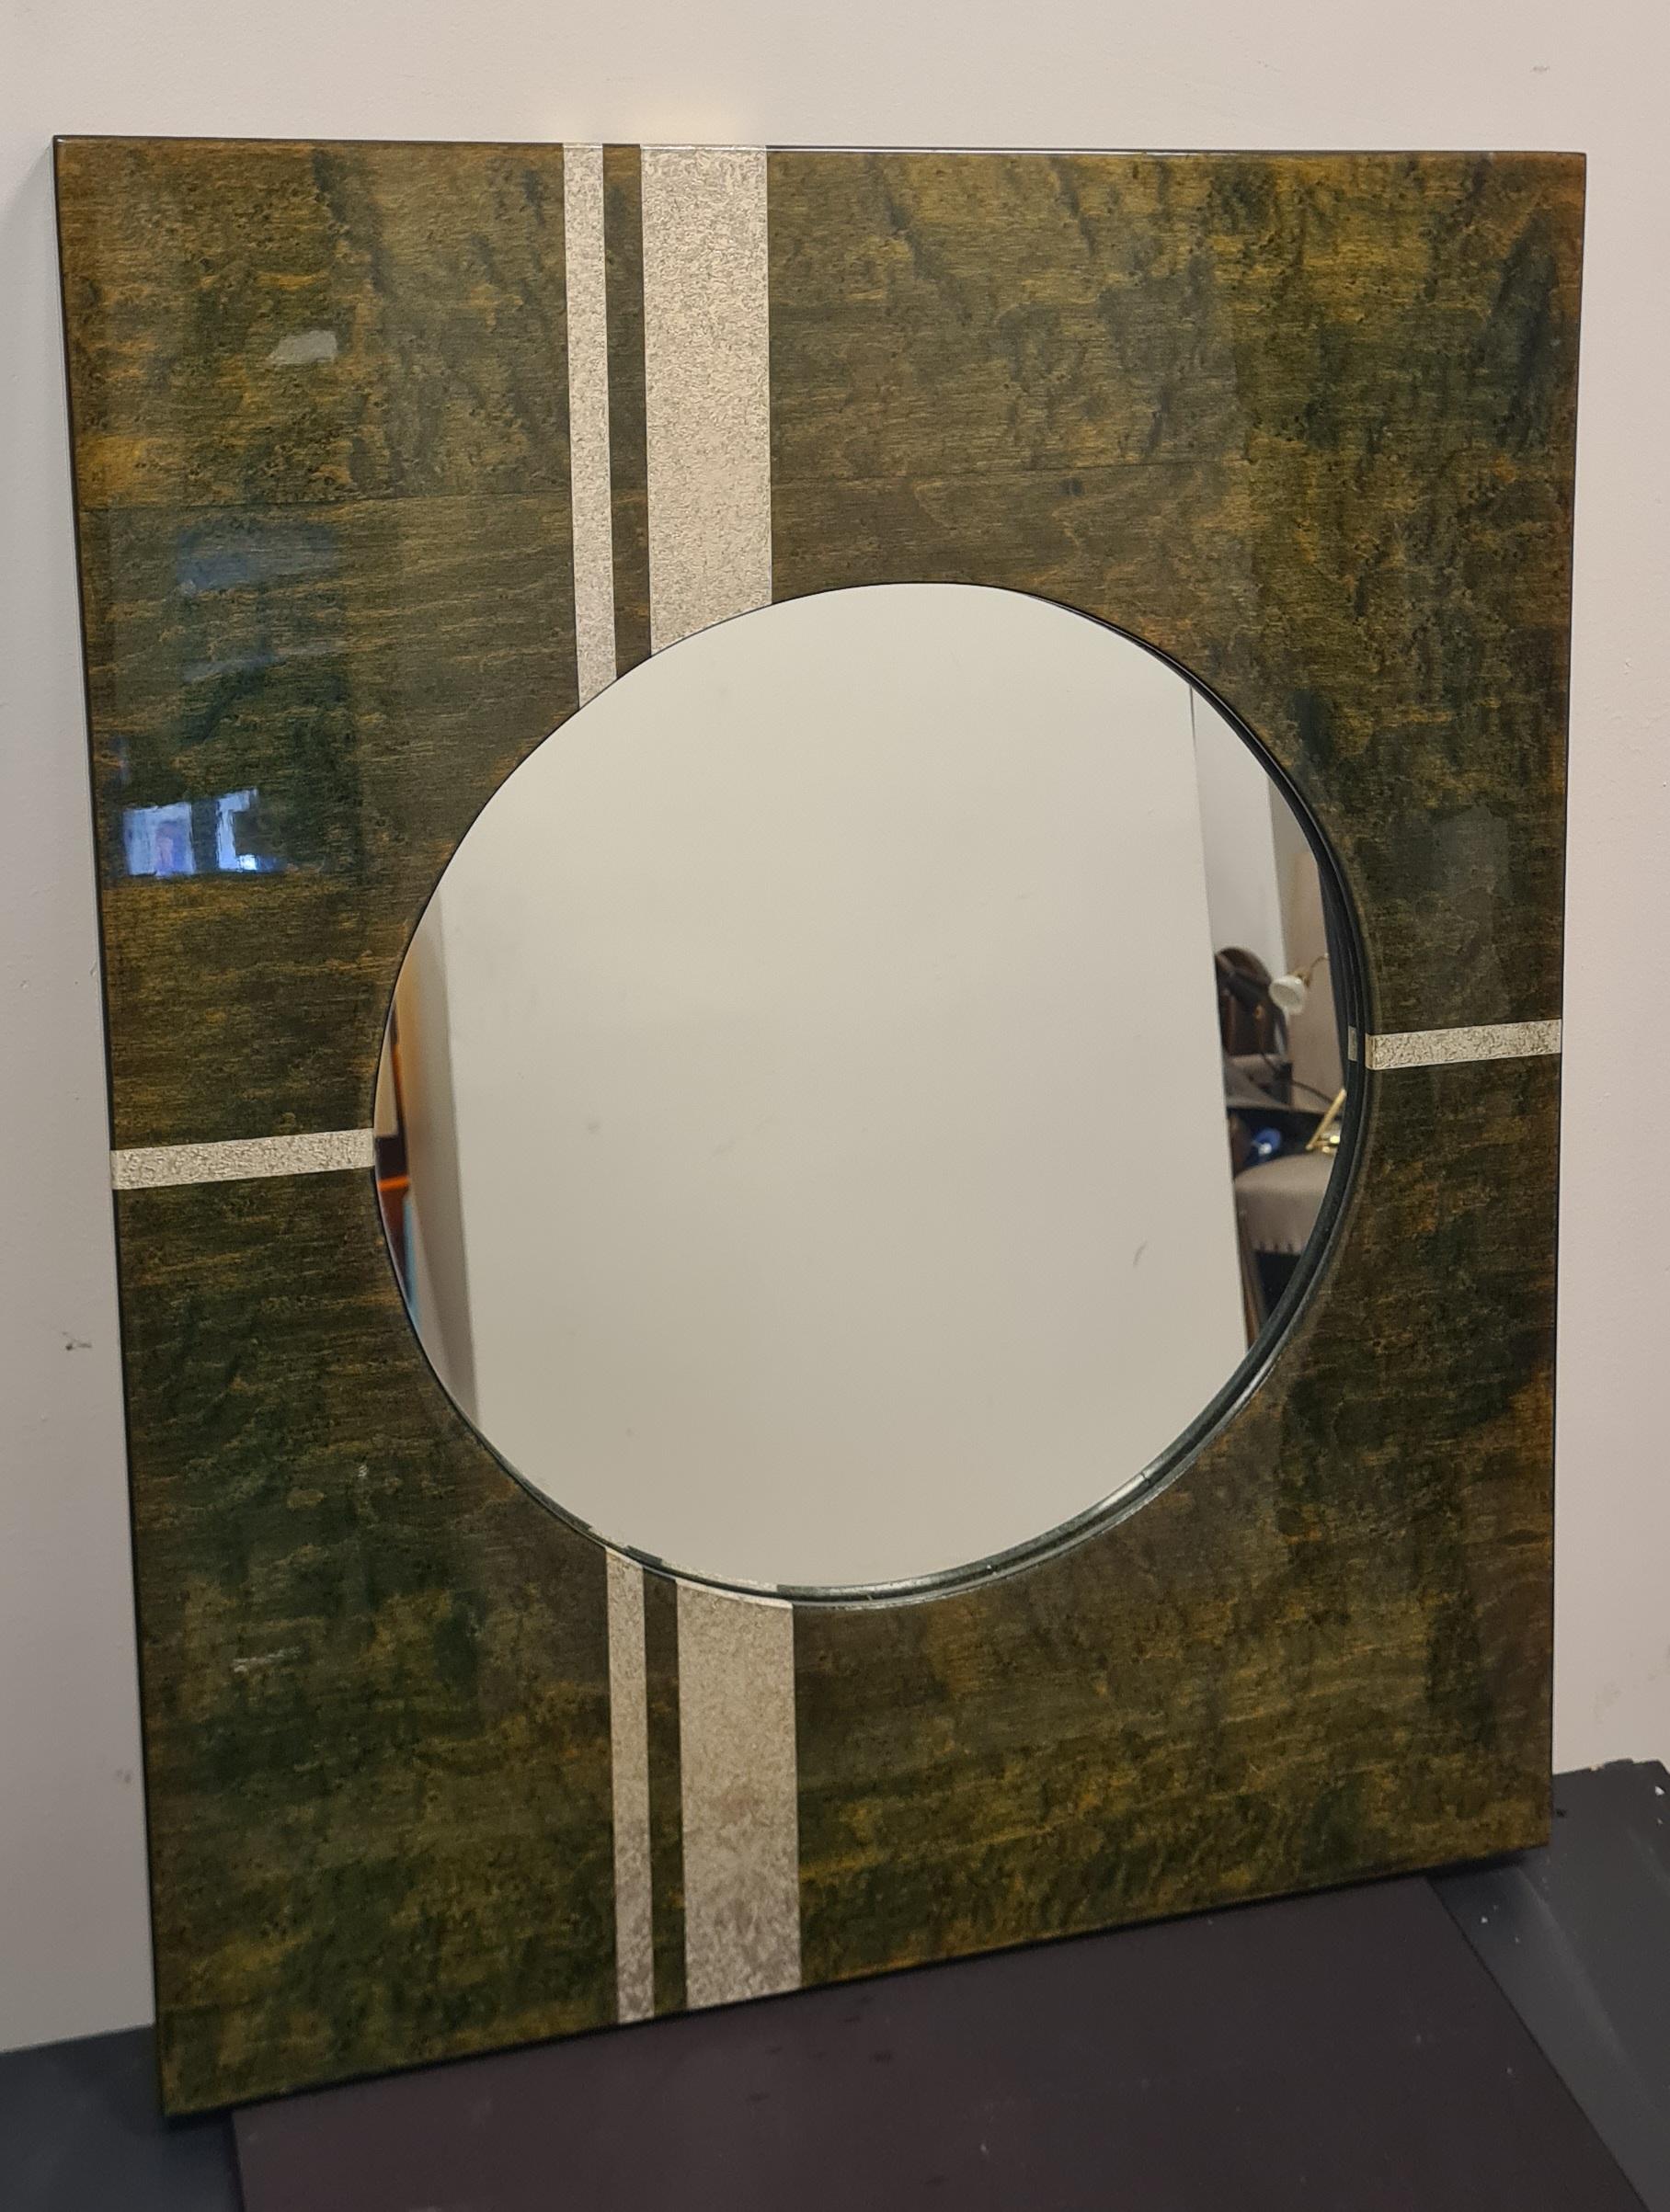 Specchio dalla forma e lo stile stipo degli anni 70'.

Lo specchio è di forma rotonda con una cornice rettangolare in legno laccato verde e decorazioni argentate.

Ideale per un ingresso o un bagno questo specchio donerà colore ed uno stile retrò ai